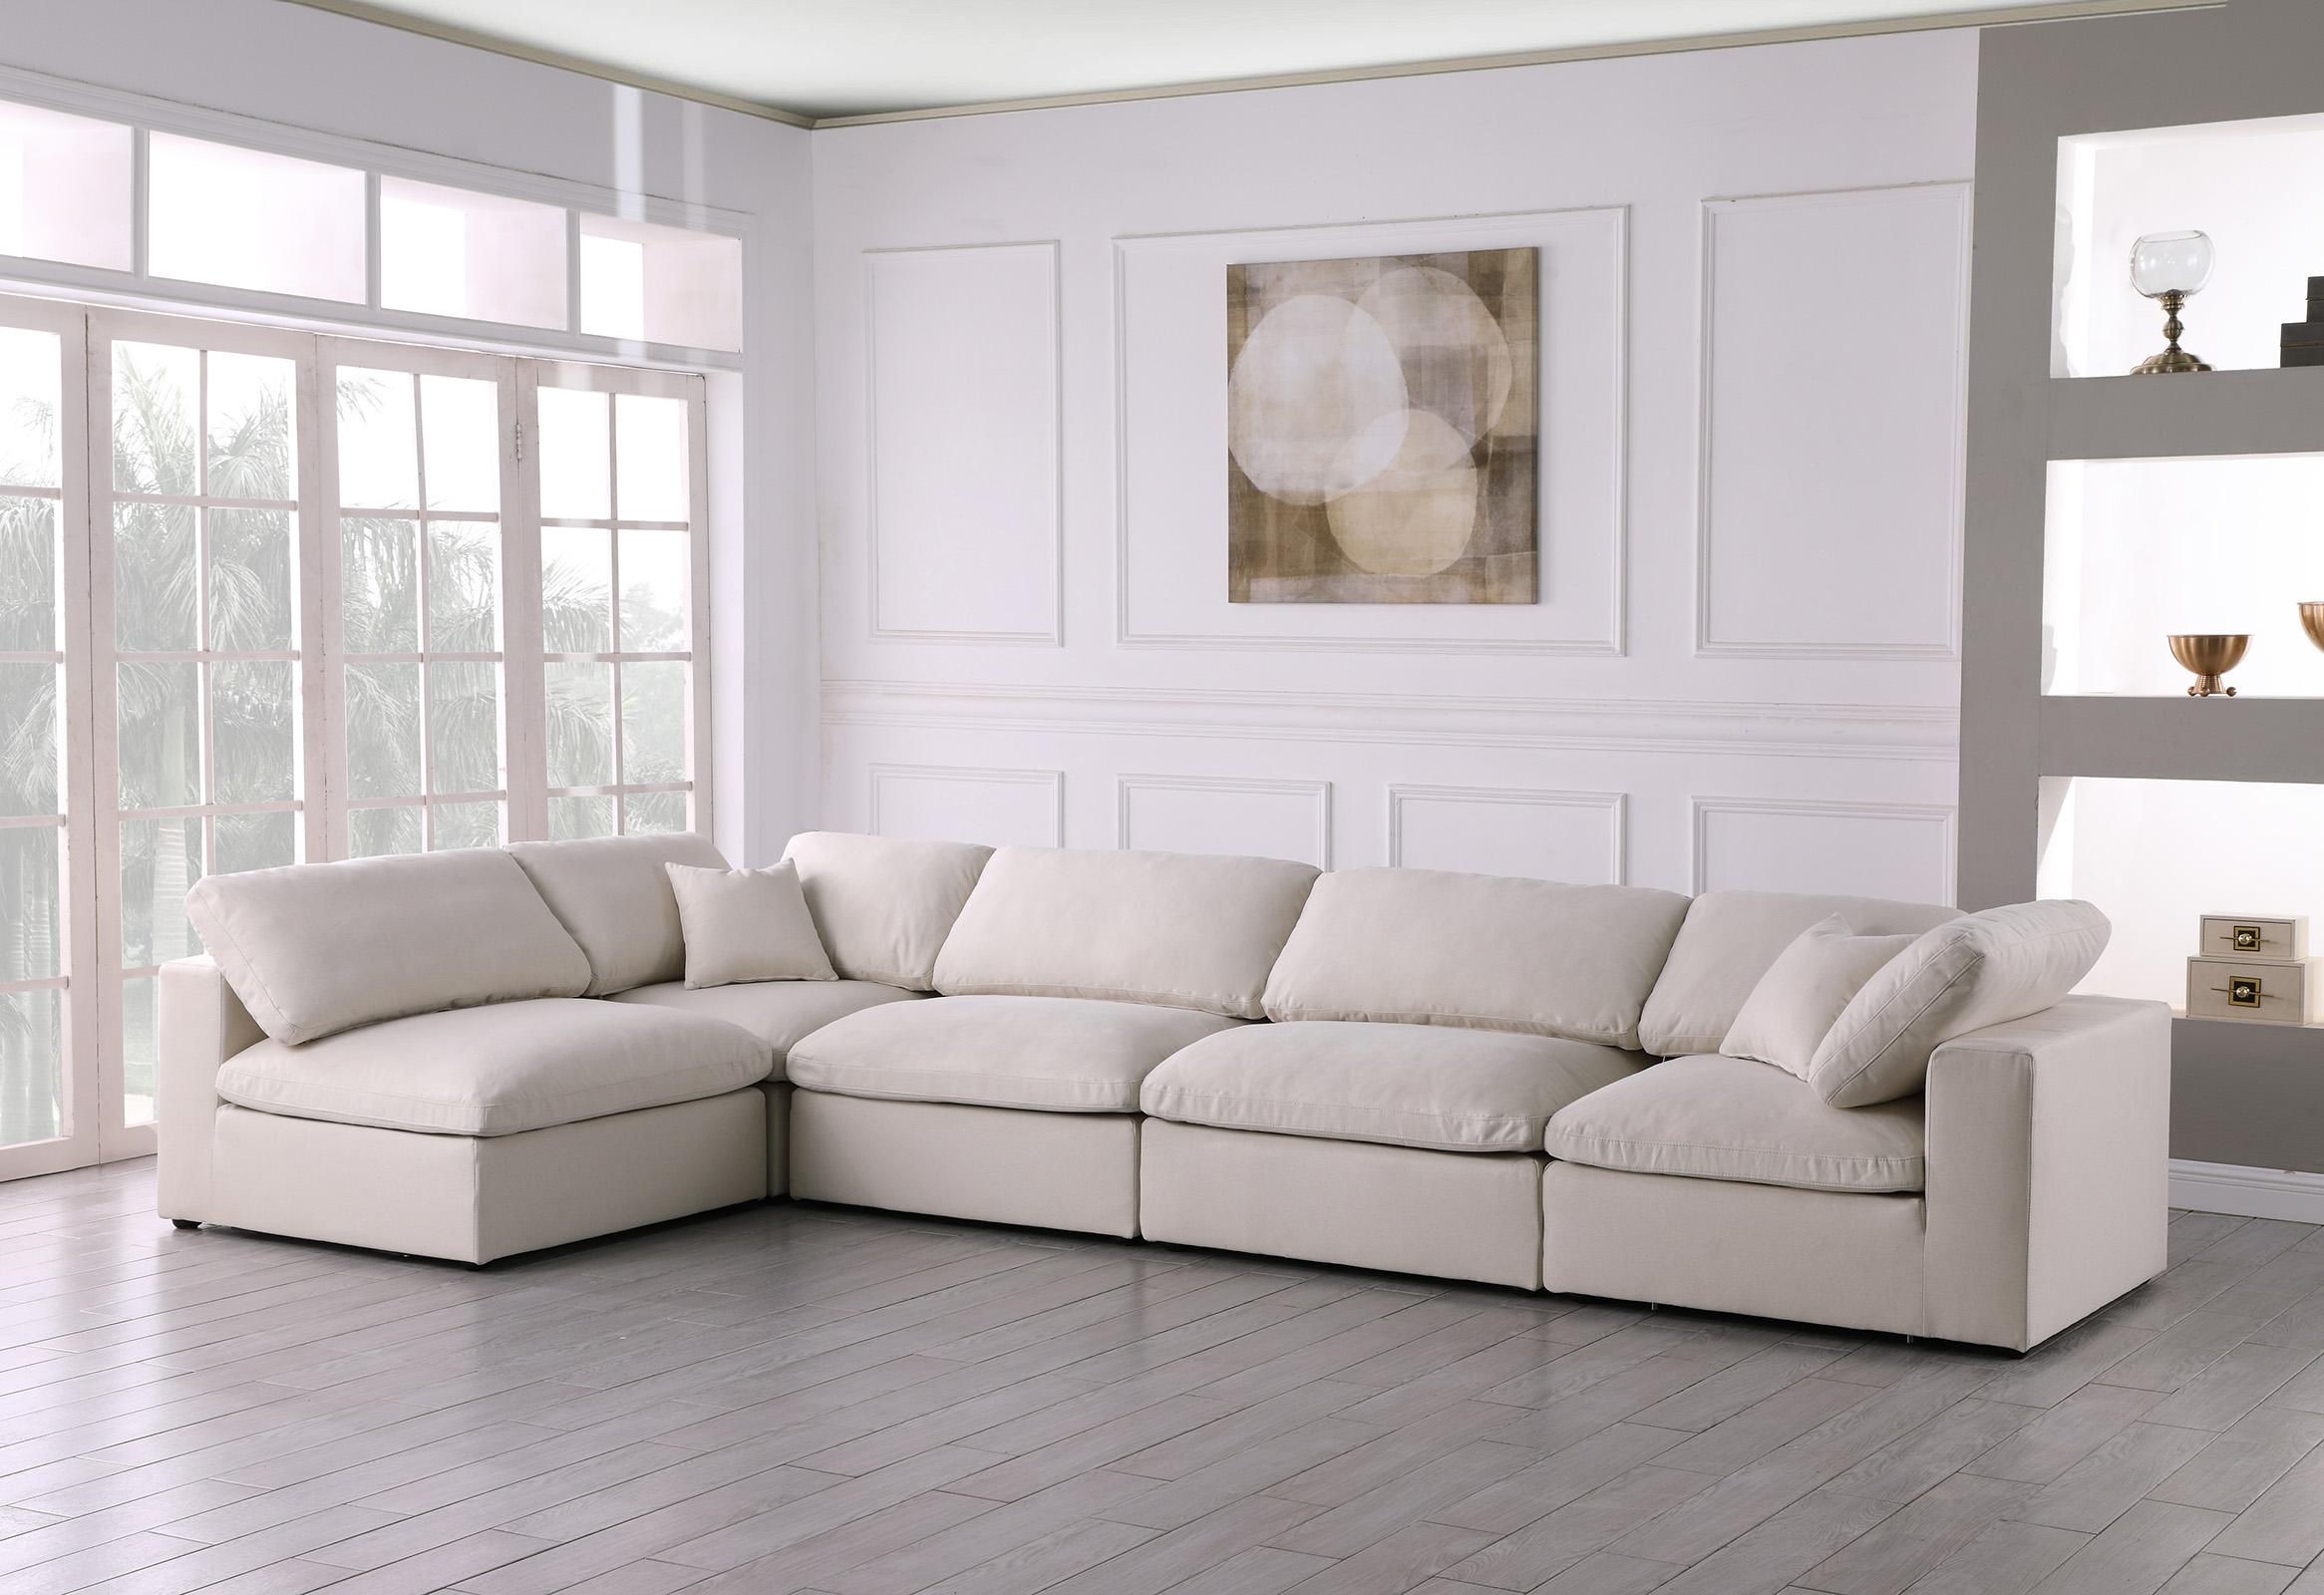 

    
Meridian Furniture 602Cream-Sec5D Modular Sectional Sofa Cream 602Cream-Sec5D
